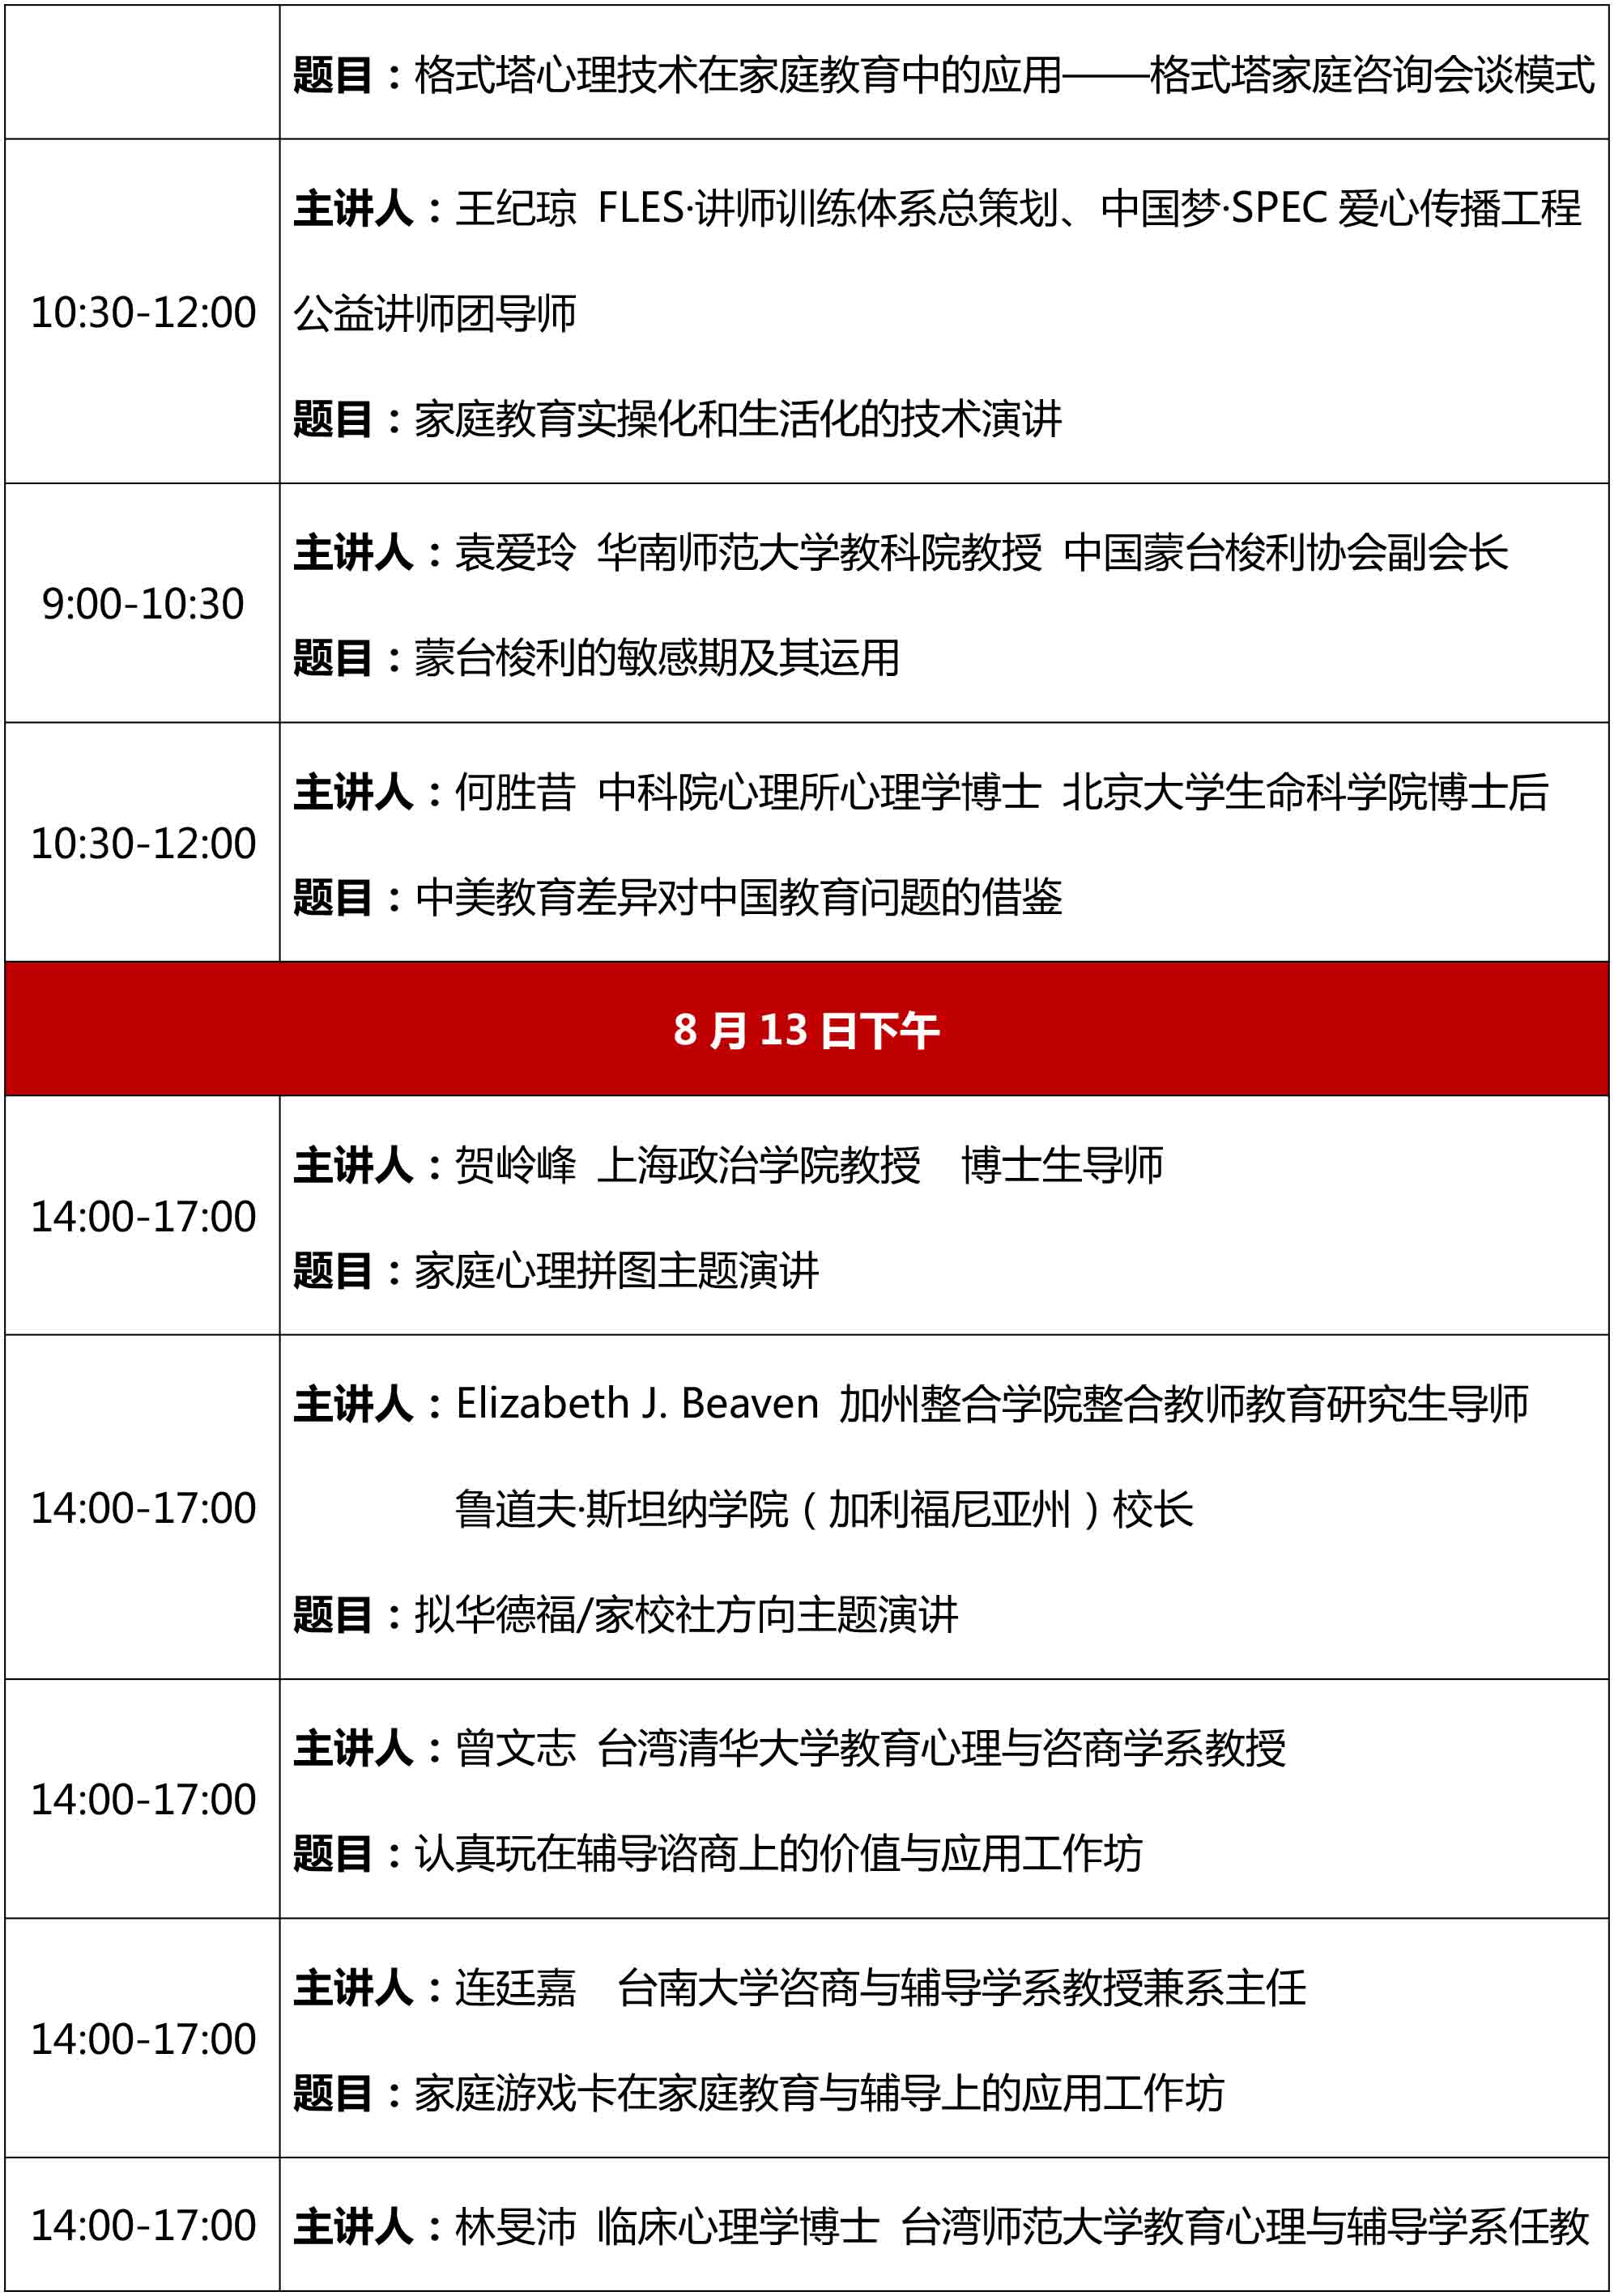 2017第十一届中国心理学家大会暨应用心理学高峰论坛 